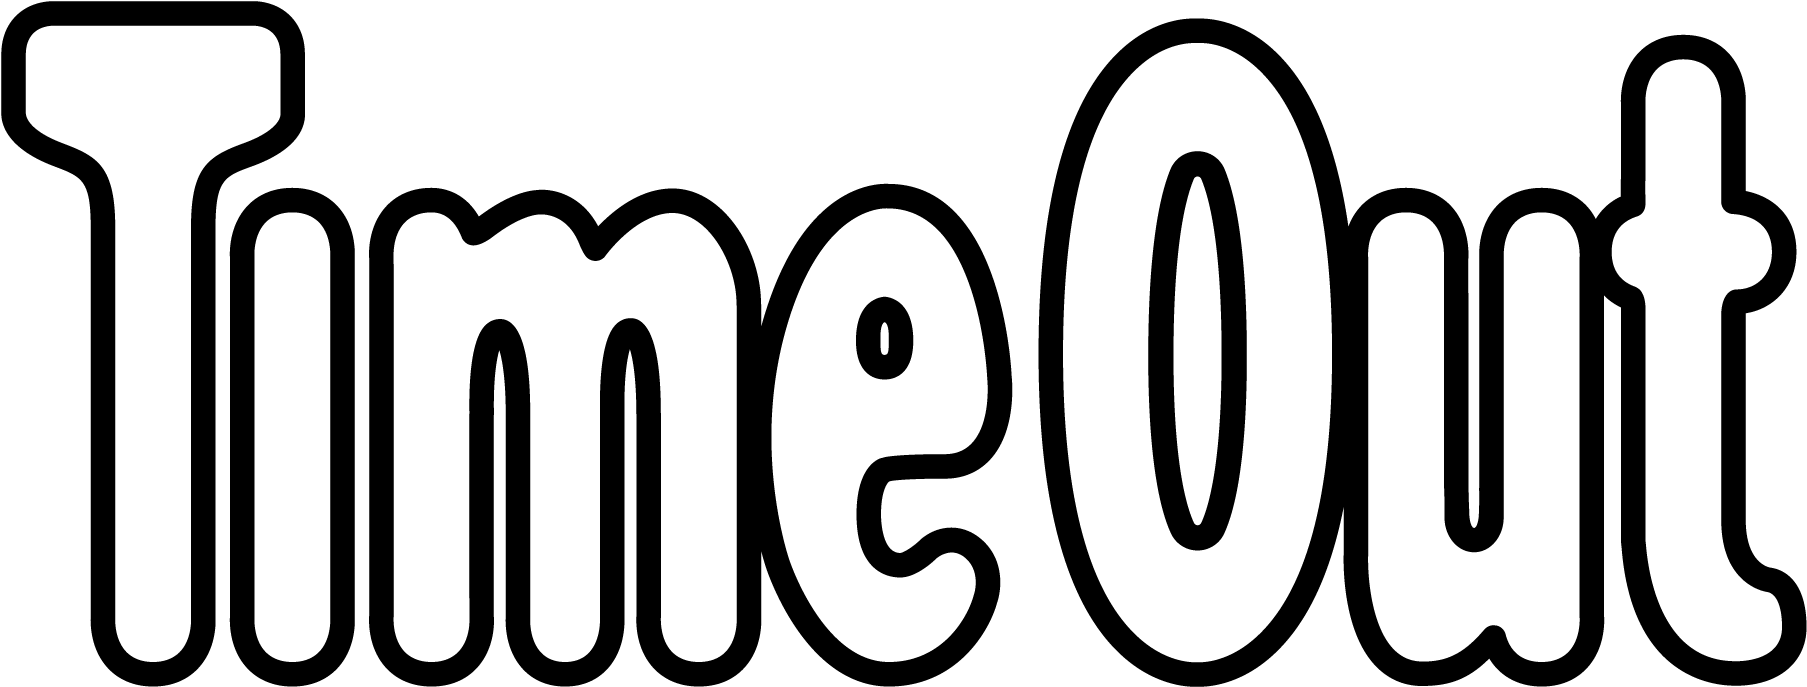 Lorem Ipsum Dolor Sit Amet - Time Out London Logo (1818x693)